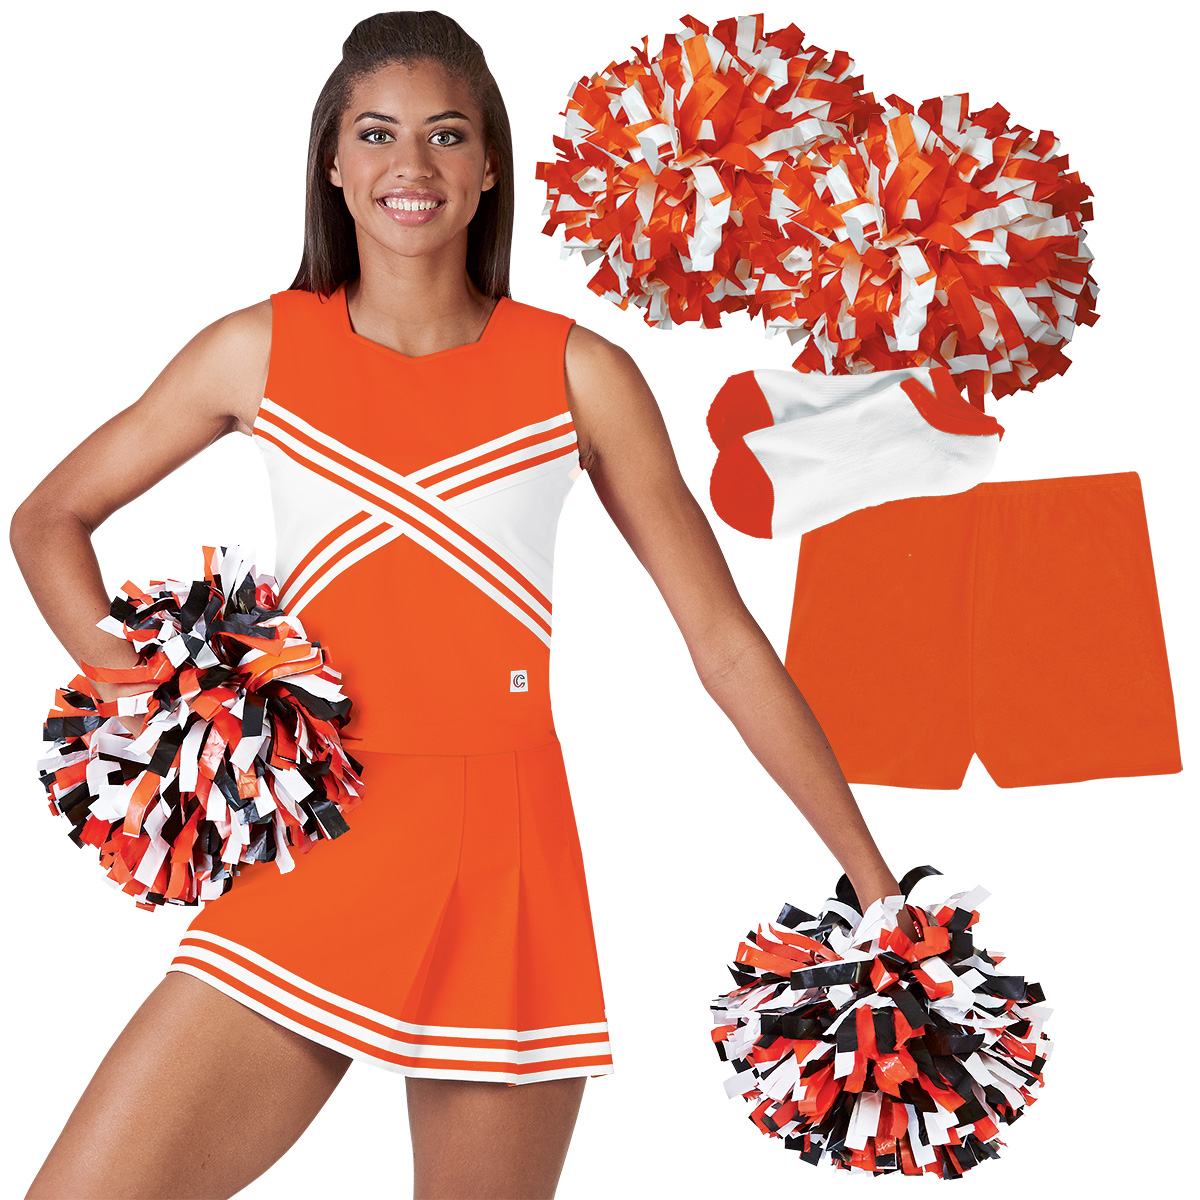 cheer uniform cheer cheerleader cheer cheerleading outfit custom cheer uniform cheerleading cheer outfit custom cheerleading uniform